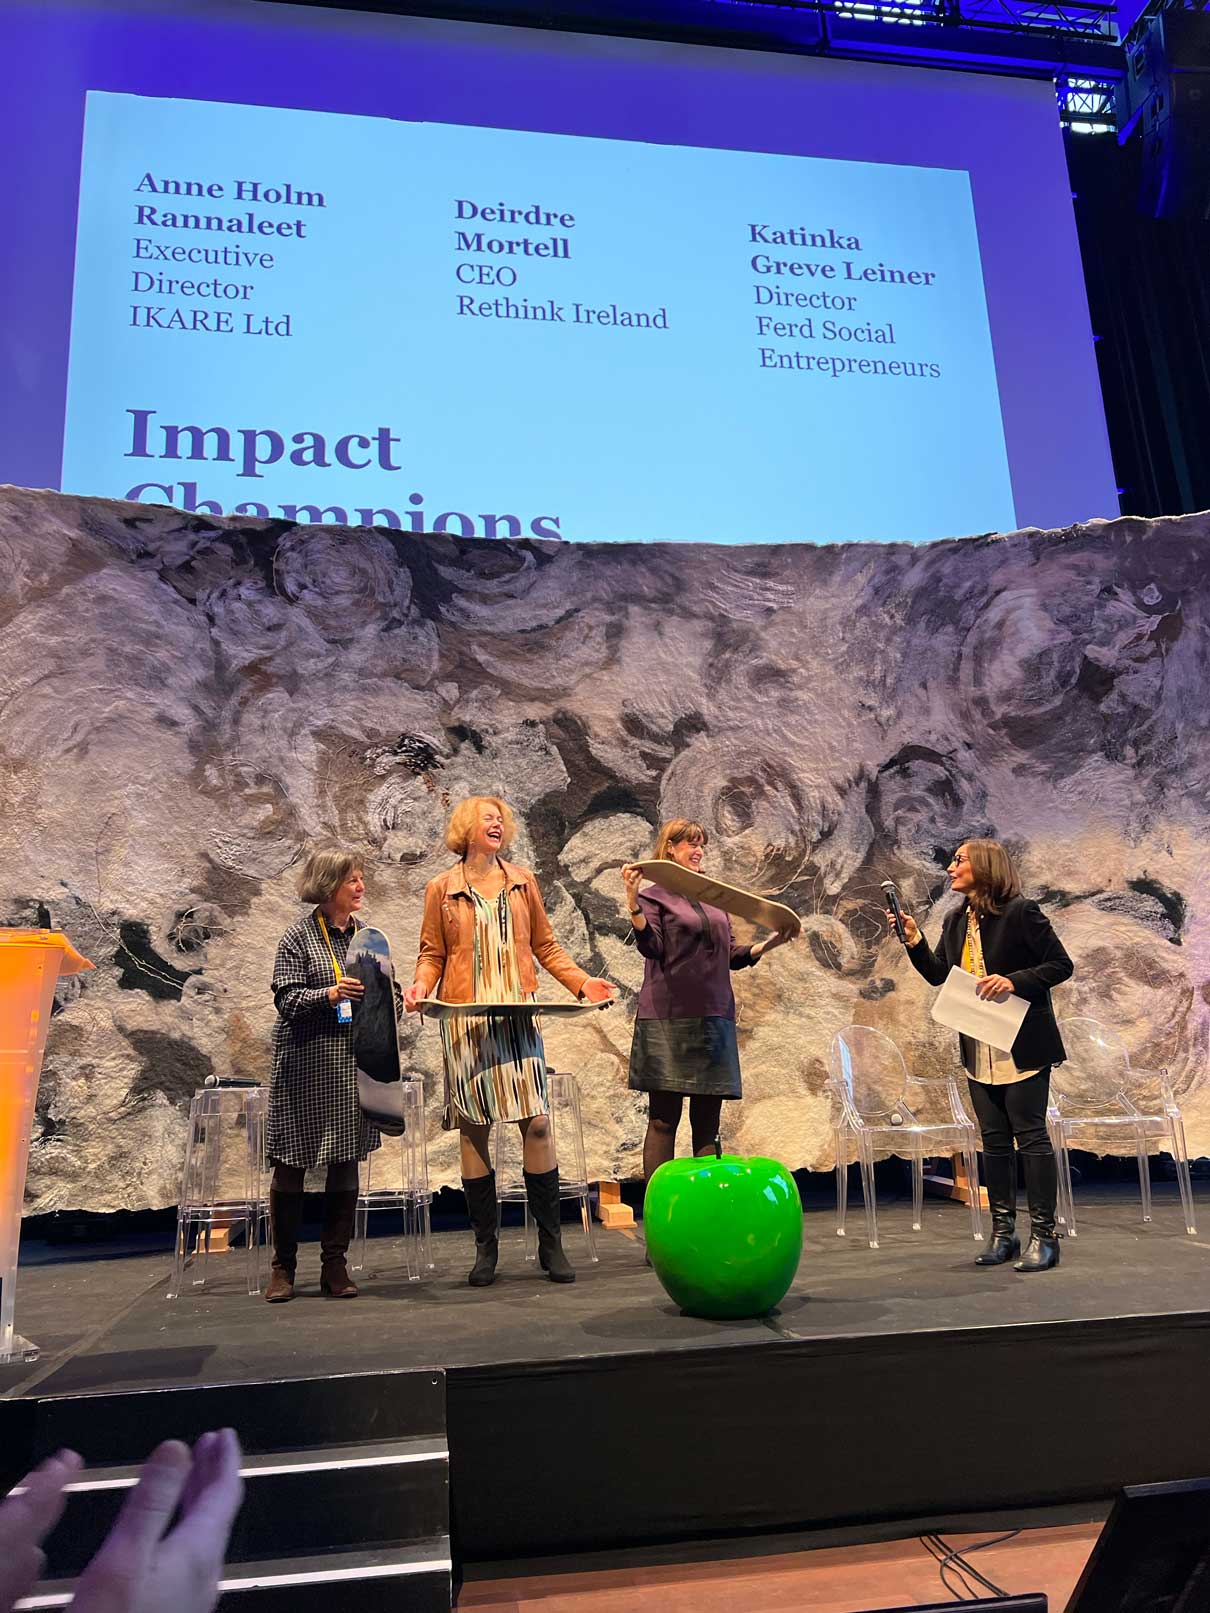 Direktør Katinka Greve Leiner i Ferd Sosiale Entreprenører er kåret til EVPA Impact Champion 2022.